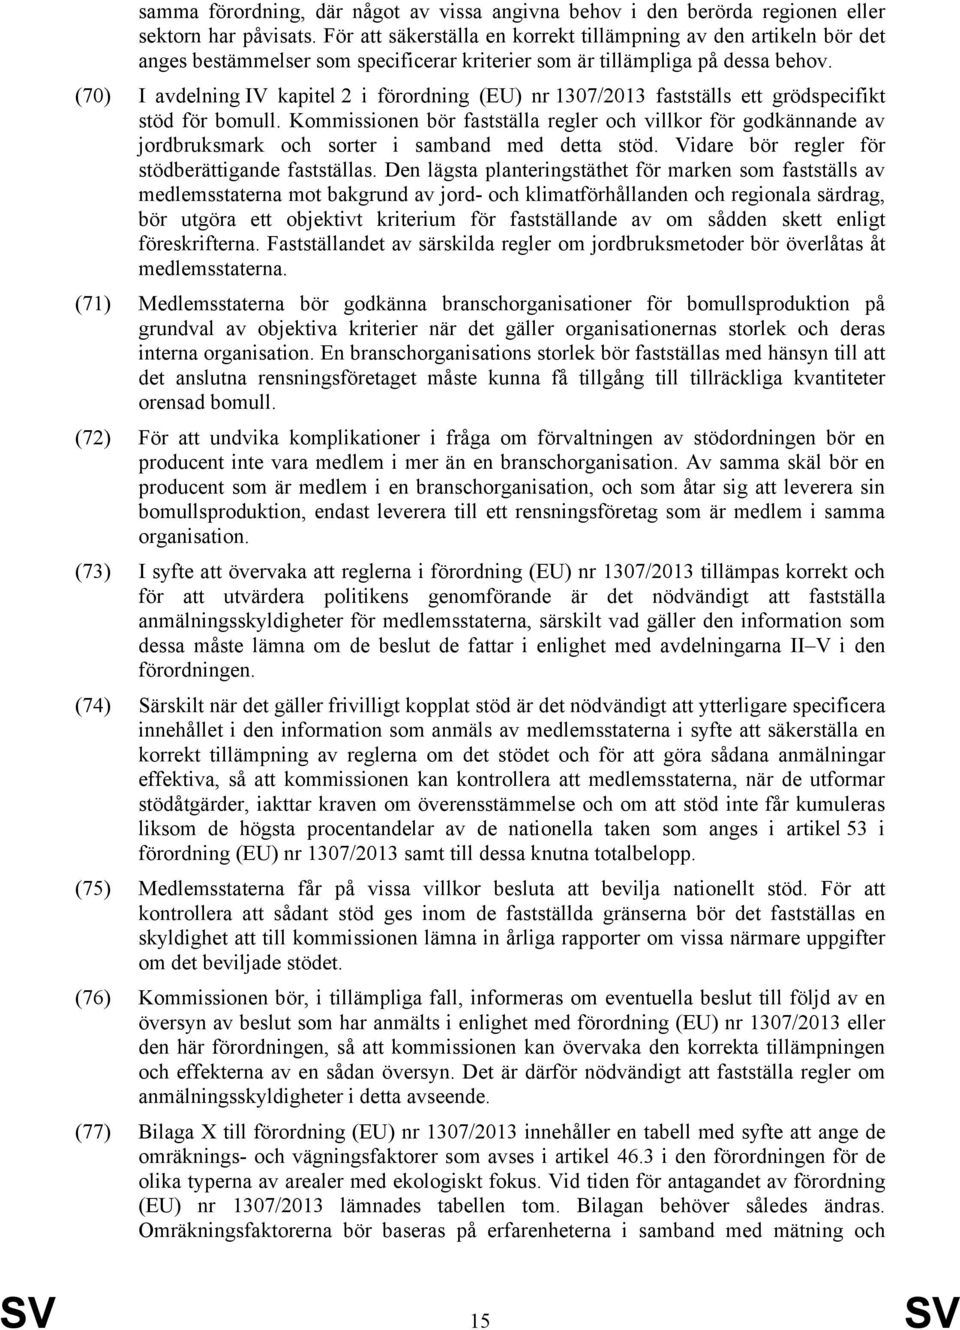 (70) I avdelning IV kapitel 2 i förordning (EU) nr 1307/2013 fastställs ett grödspecifikt stöd för bomull.